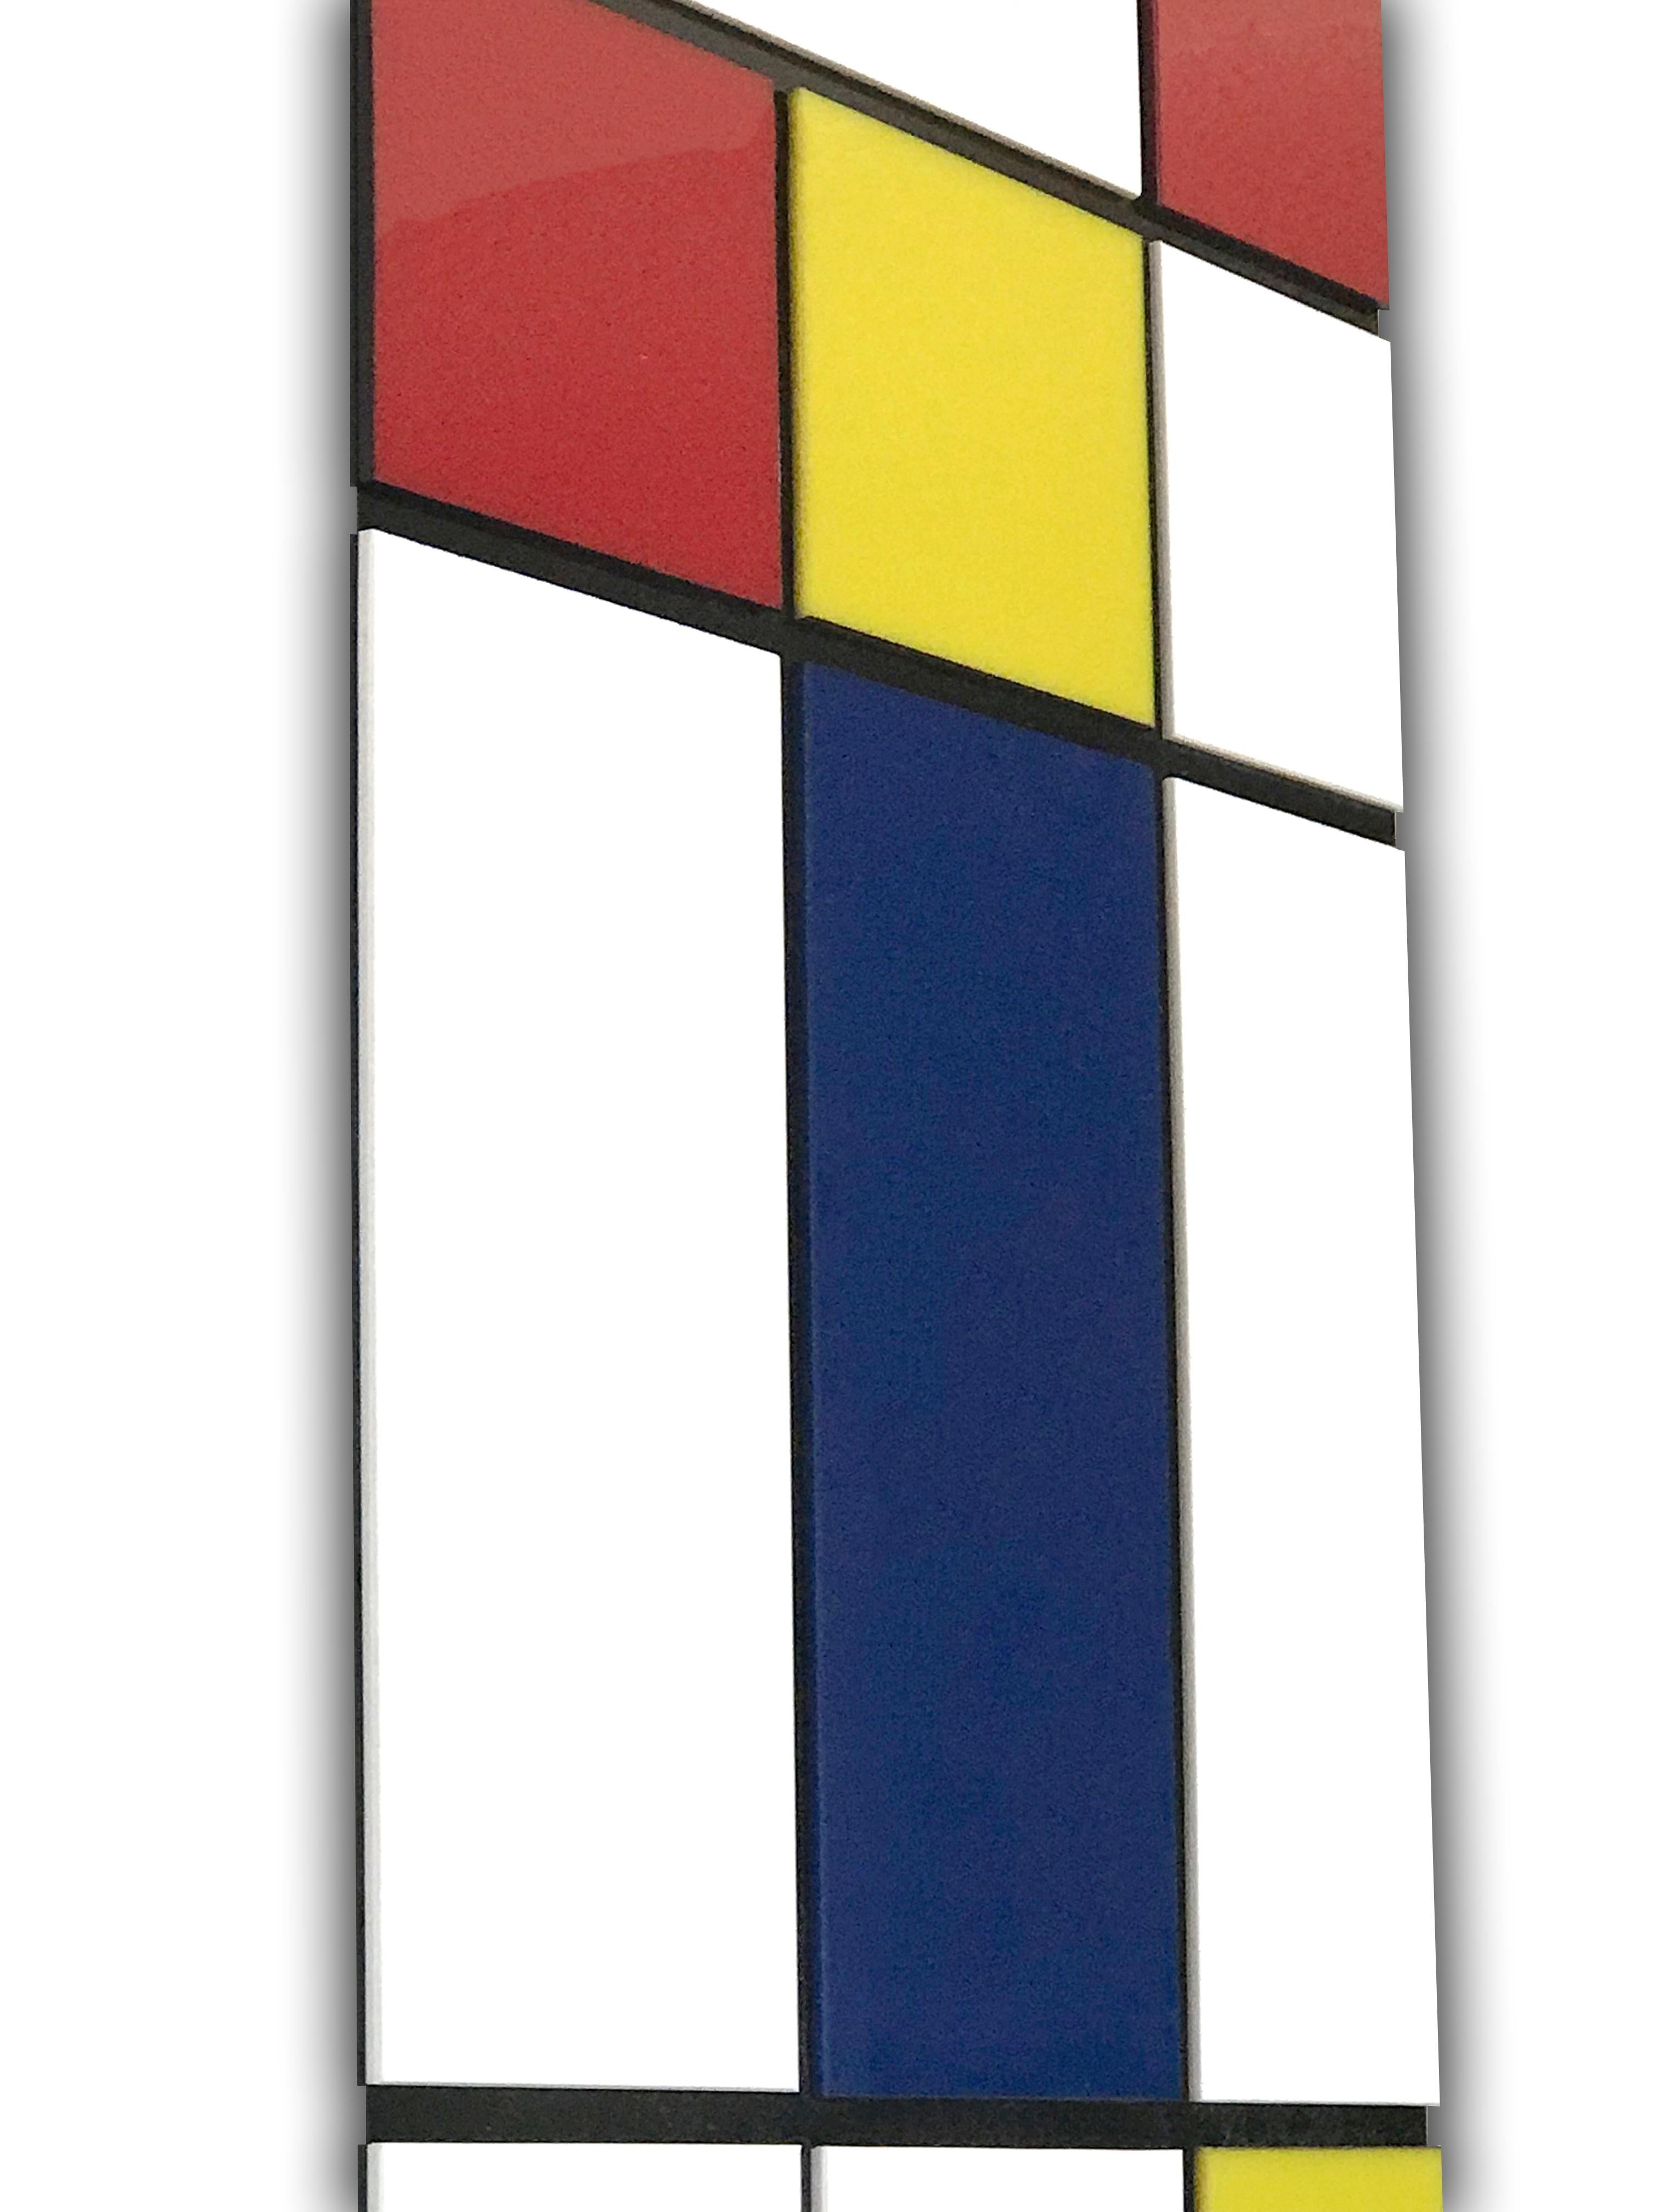 Piet Mondrian war und ist ein Pionier der abstrakten Kunst. Diese 3D-Wandskulptur ist eine Hommage an sein Schaffen. Obwohl sein Werk mehrere Stilrichtungen umfasst, sind es seine Kompositionen mit Primärfarben und einfachen Linien, die ihn berühmt